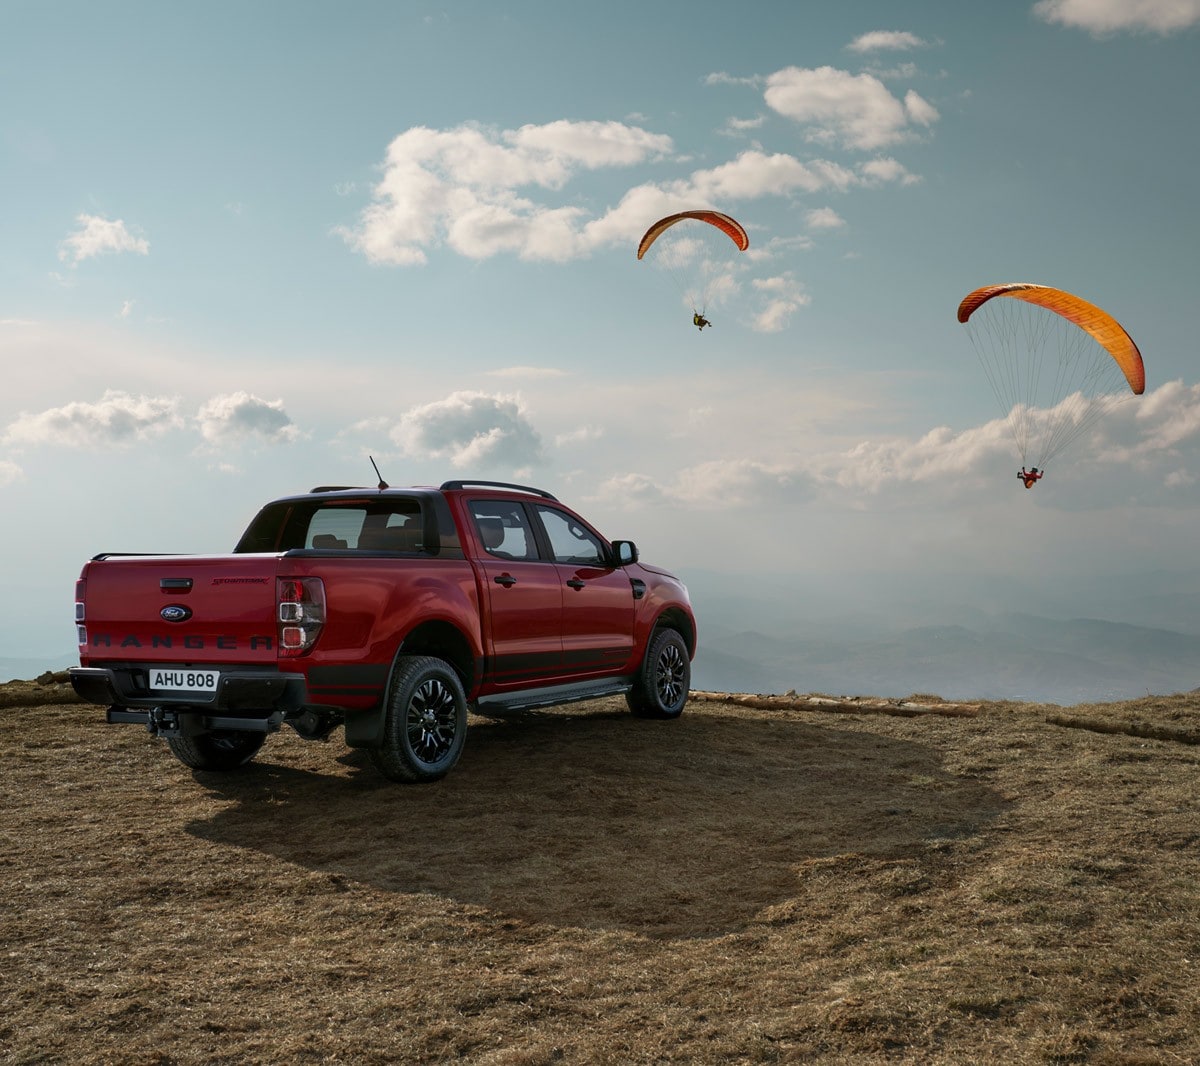 Ford Ranger Stormtrak rouge, vue de profil aux trois quarts, garé dans un paysage de dunes avec un parapente dans le ciel